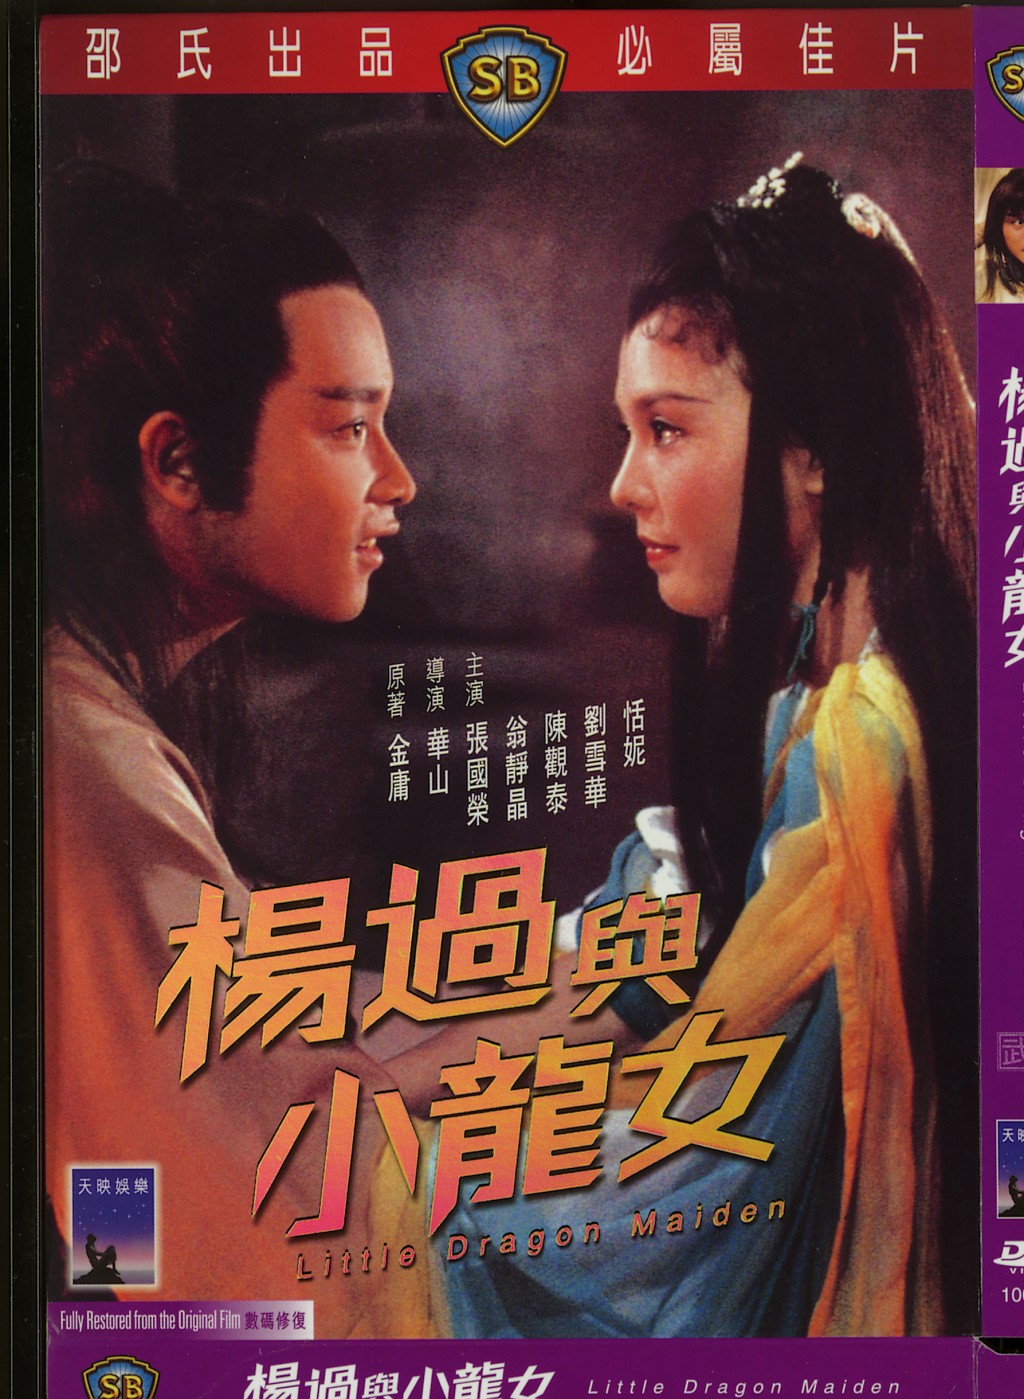 翁静晶曾与张国荣拍过《杨过与小龙女》。